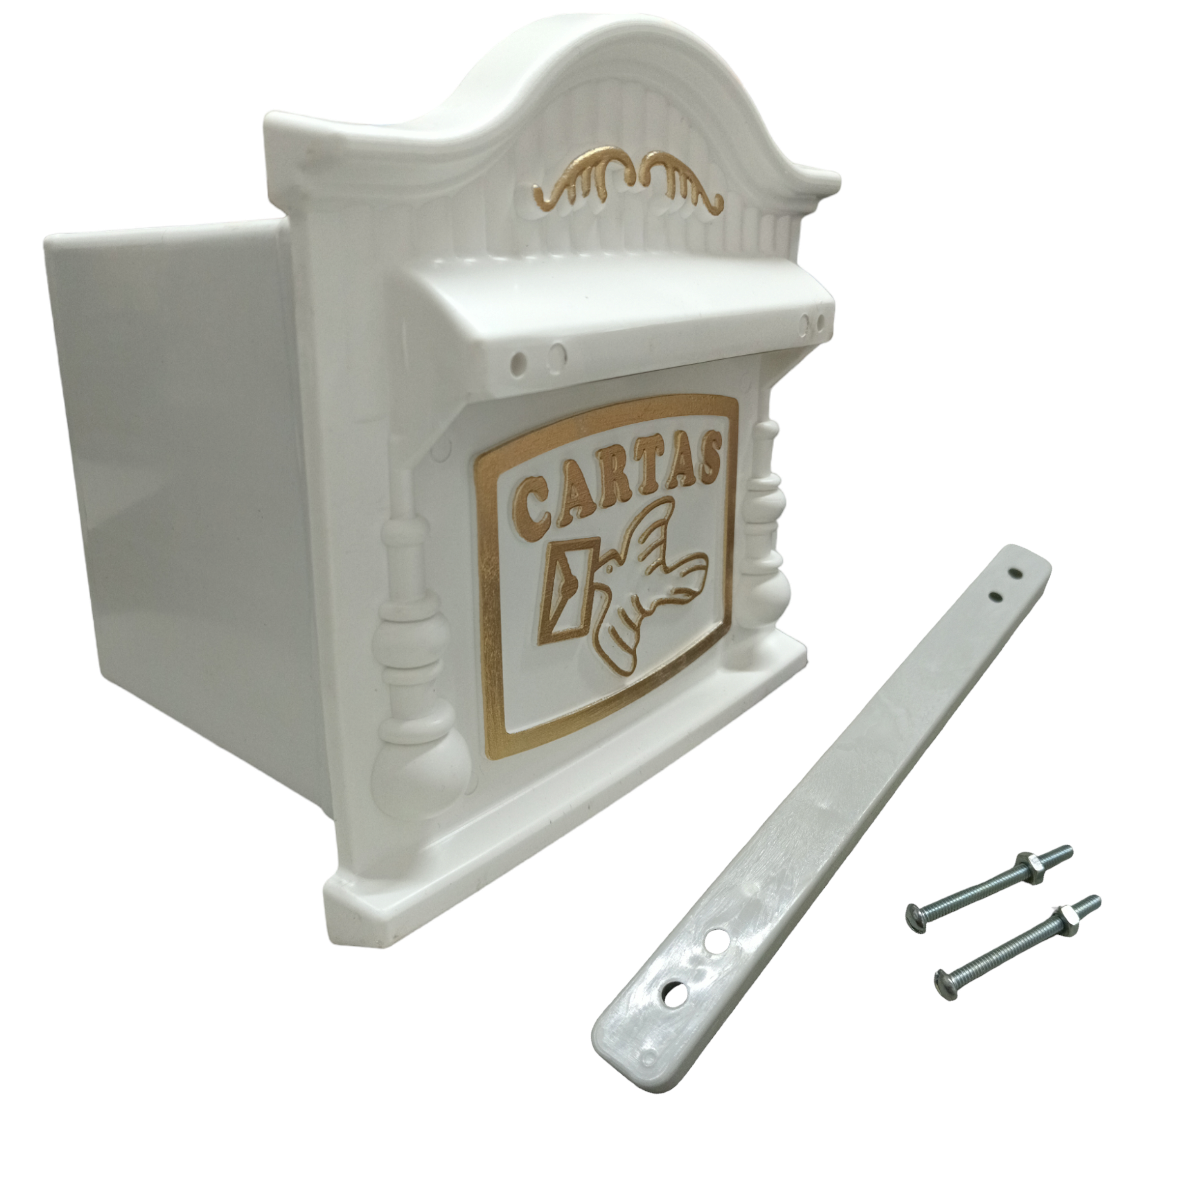 Caixa de Correio Plástica Compacta Branca e Dourada com Suporte para Grade - 1